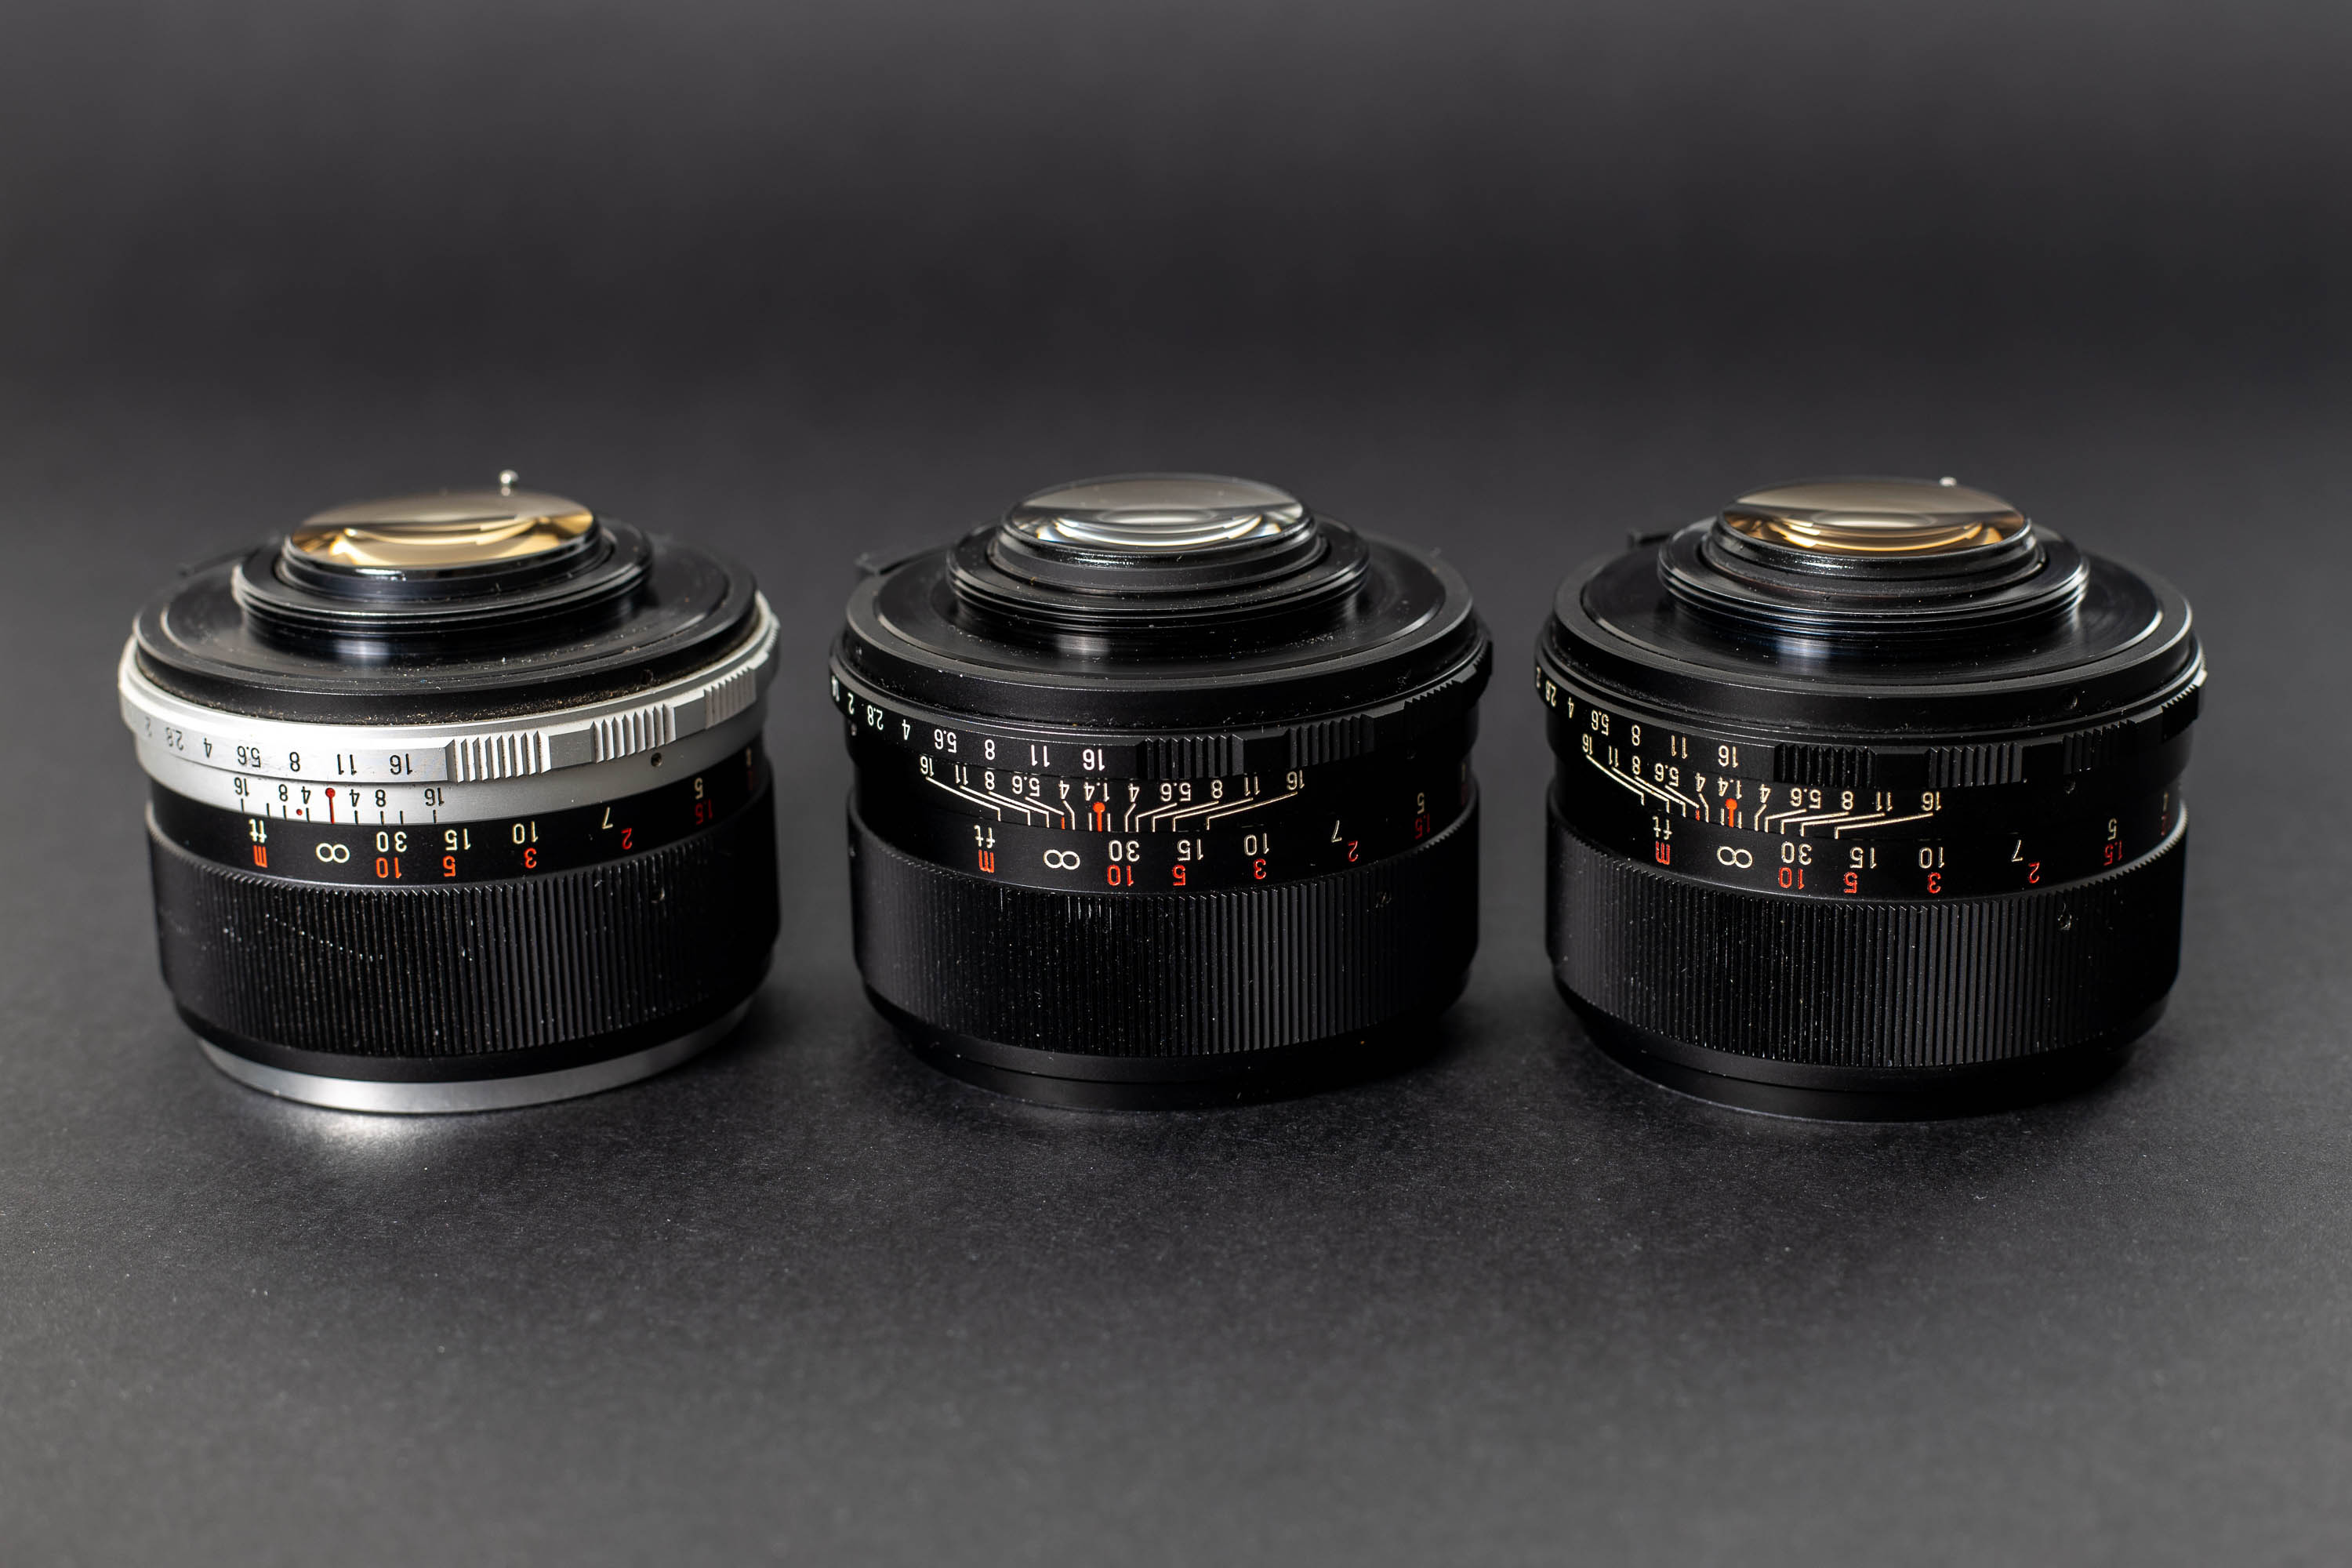 Three Mamiya Sekor 55mm f1.4 lenses - Rear elements at an angle.